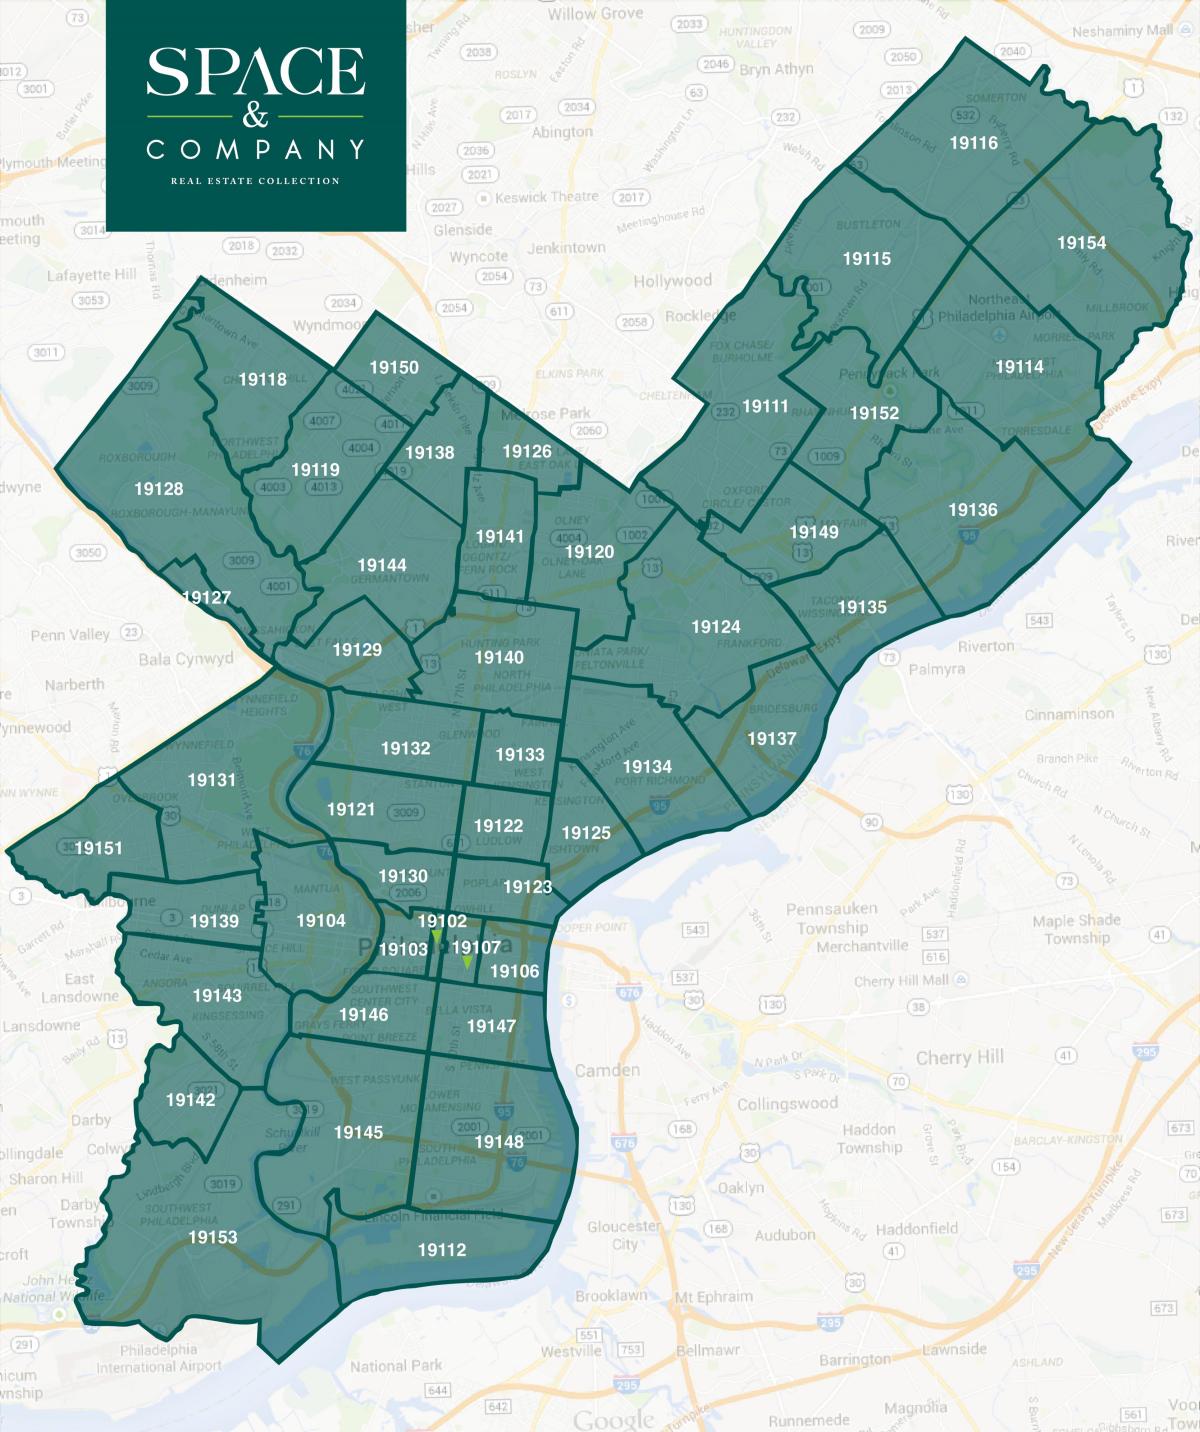 карта околиць Філадельфії і zip коди